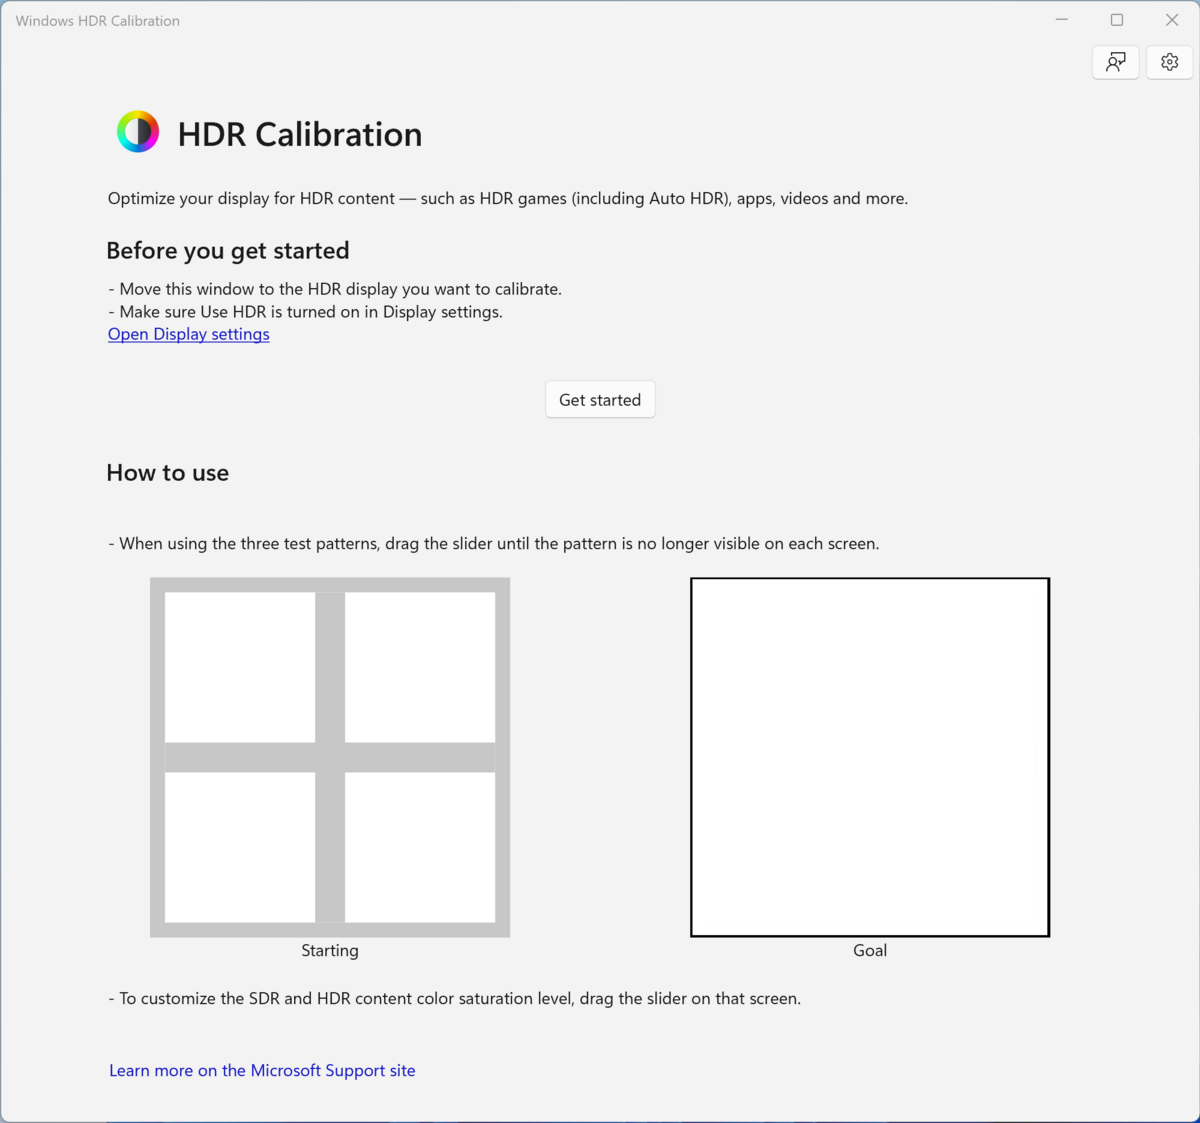 Windows HDR Calibration MAIN